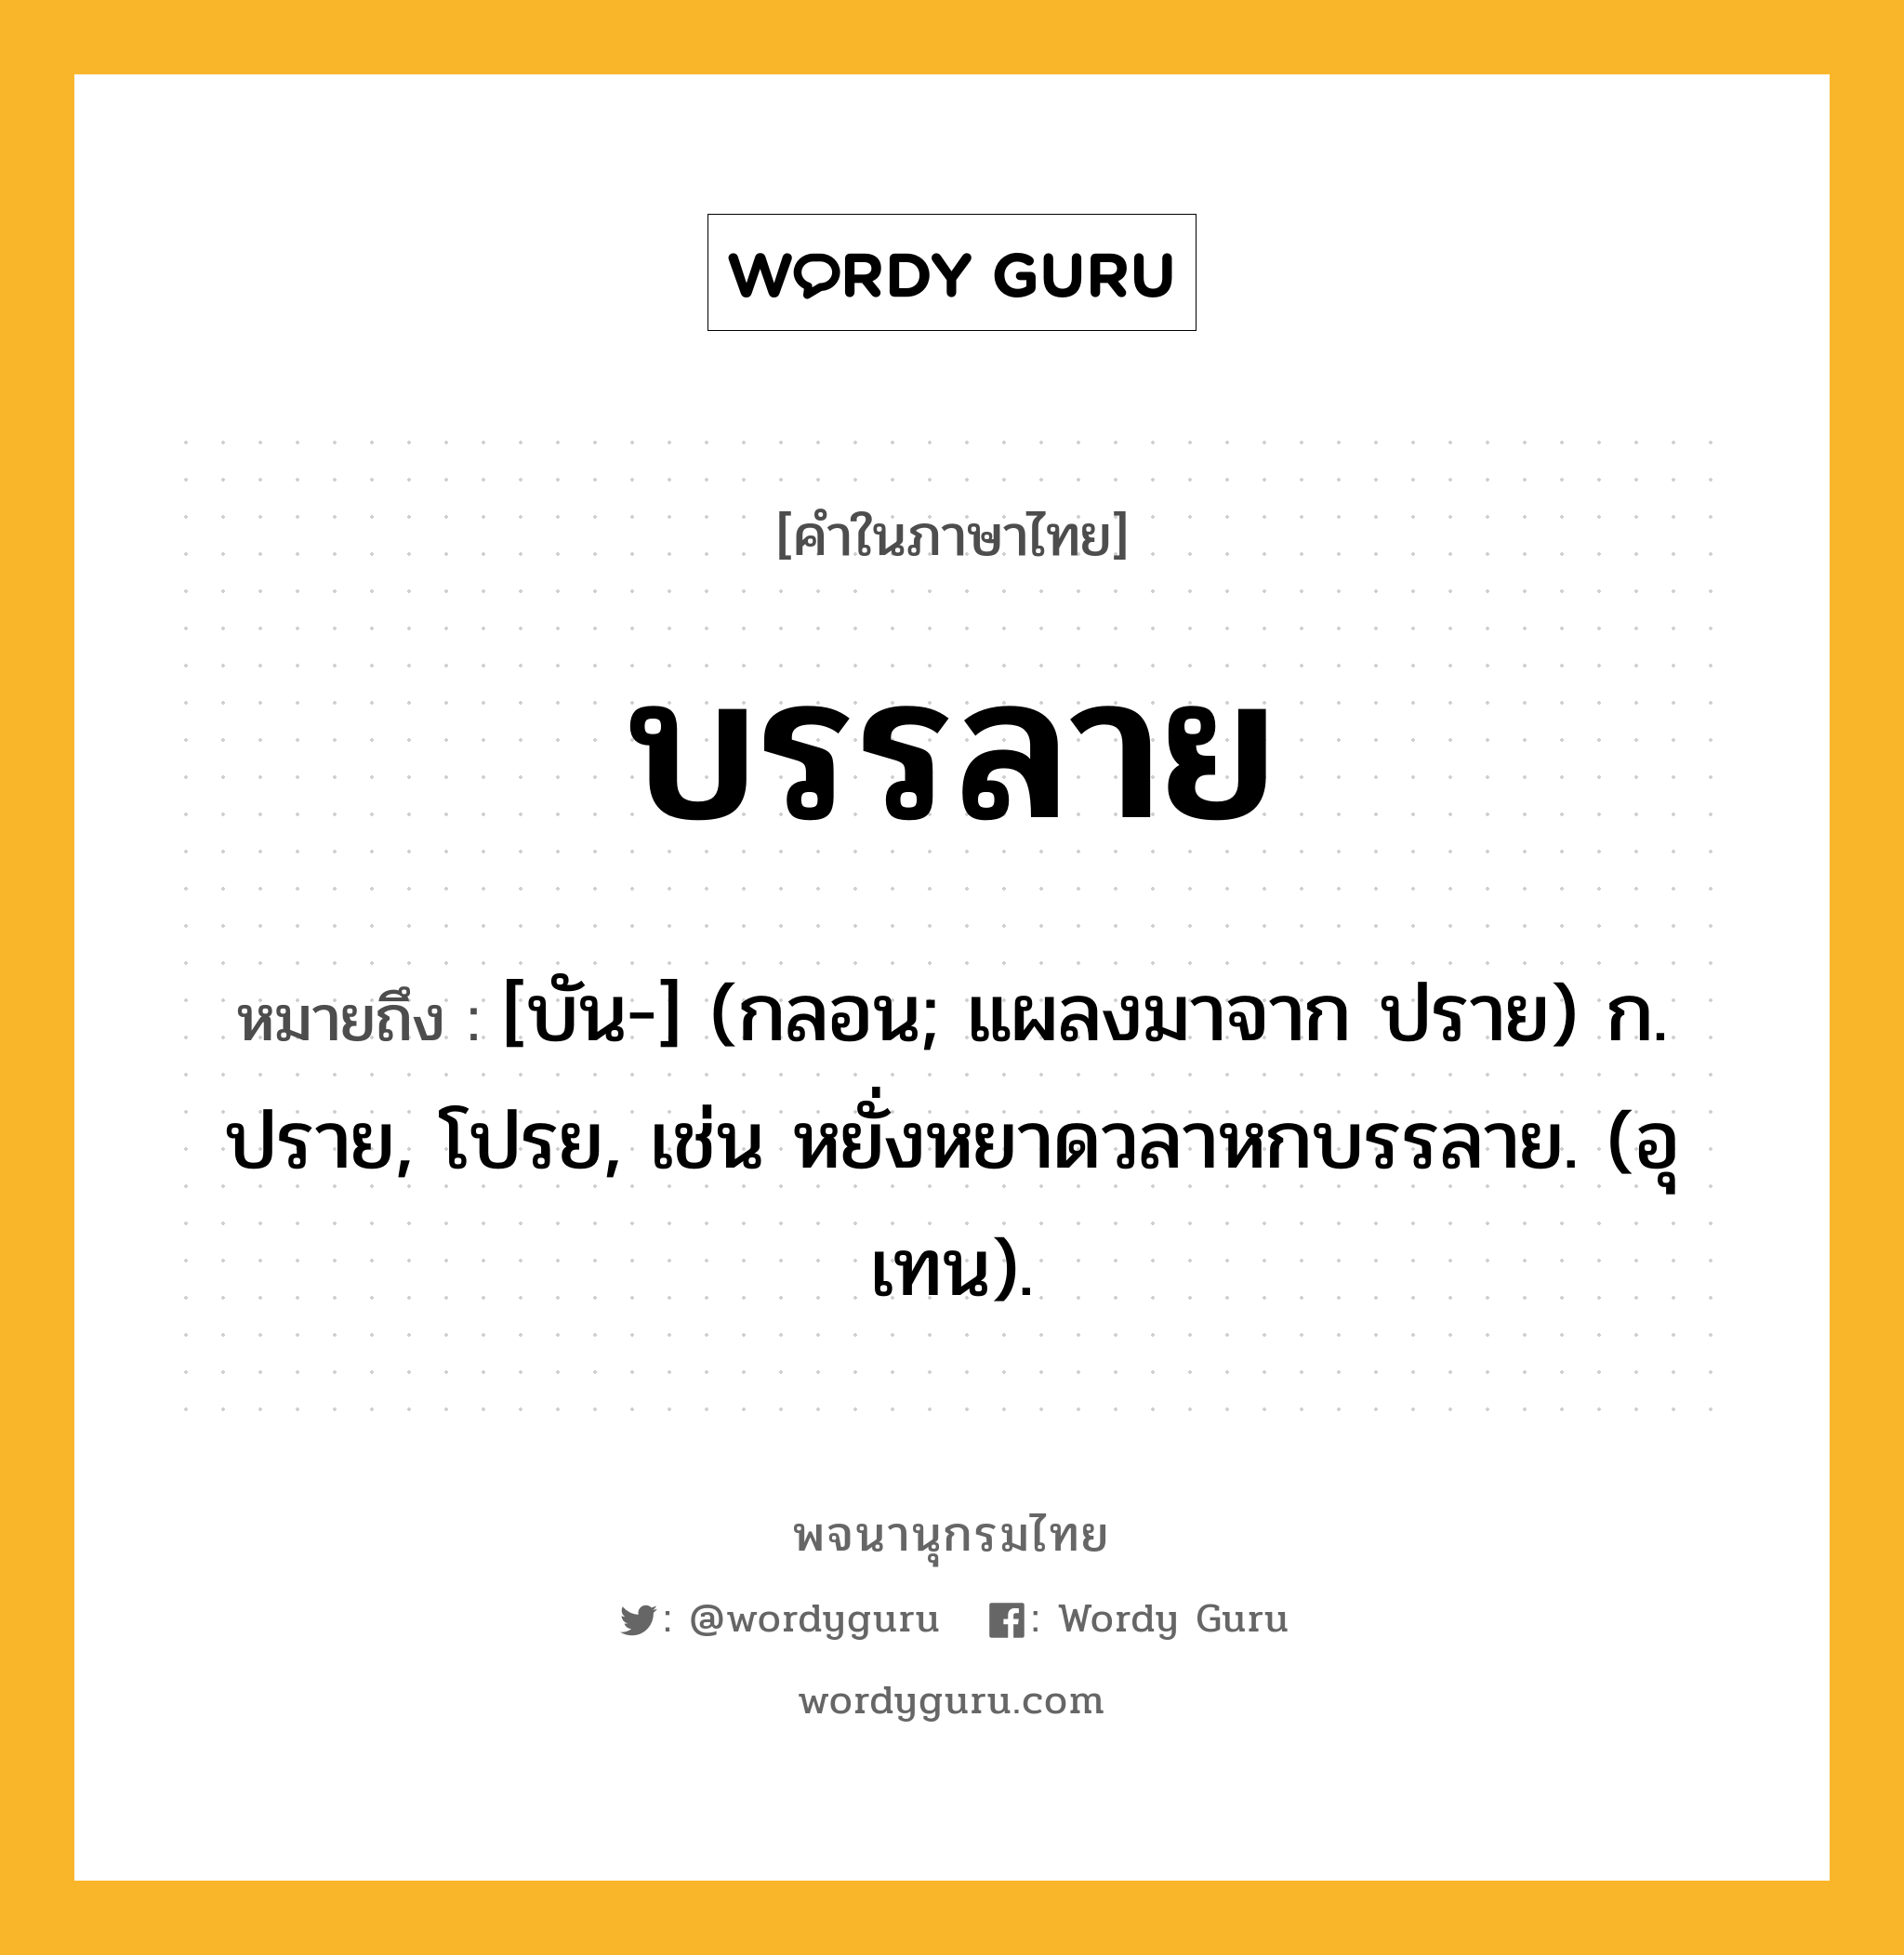 บรรลาย ความหมาย หมายถึงอะไร?, คำในภาษาไทย บรรลาย หมายถึง [บัน-] (กลอน; แผลงมาจาก ปราย) ก. ปราย, โปรย, เช่น หยั่งหยาดวลาหกบรรลาย. (อุเทน).